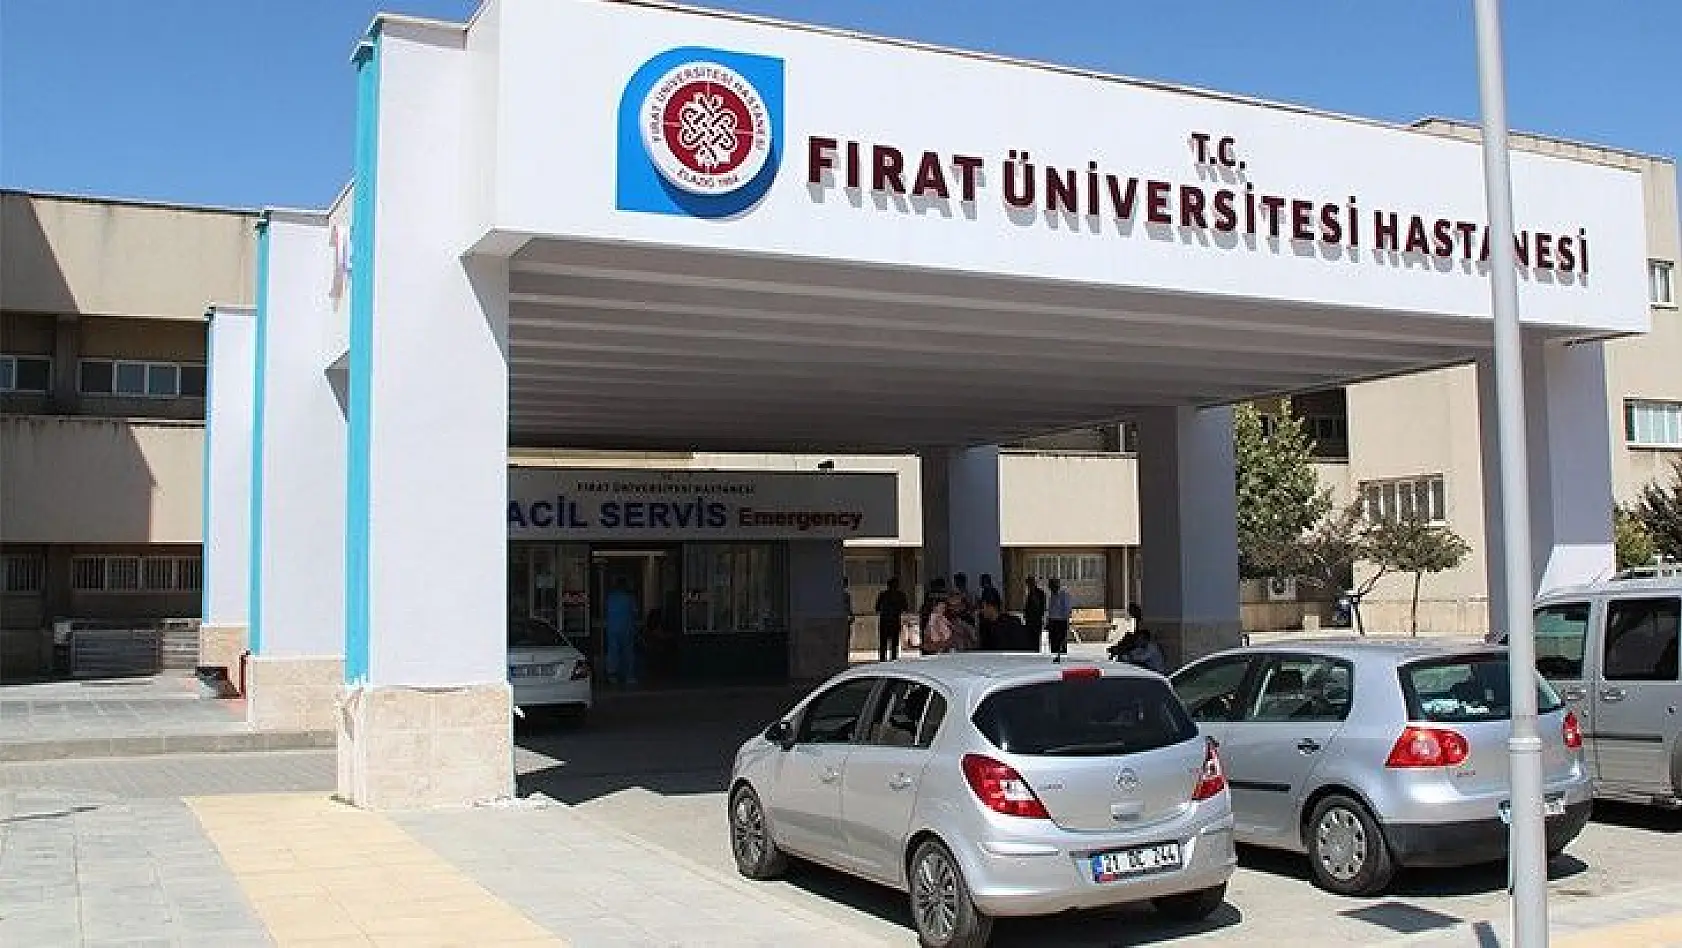 Fırat Üniversitesi Hastanesi'nden Önemli Açıklama